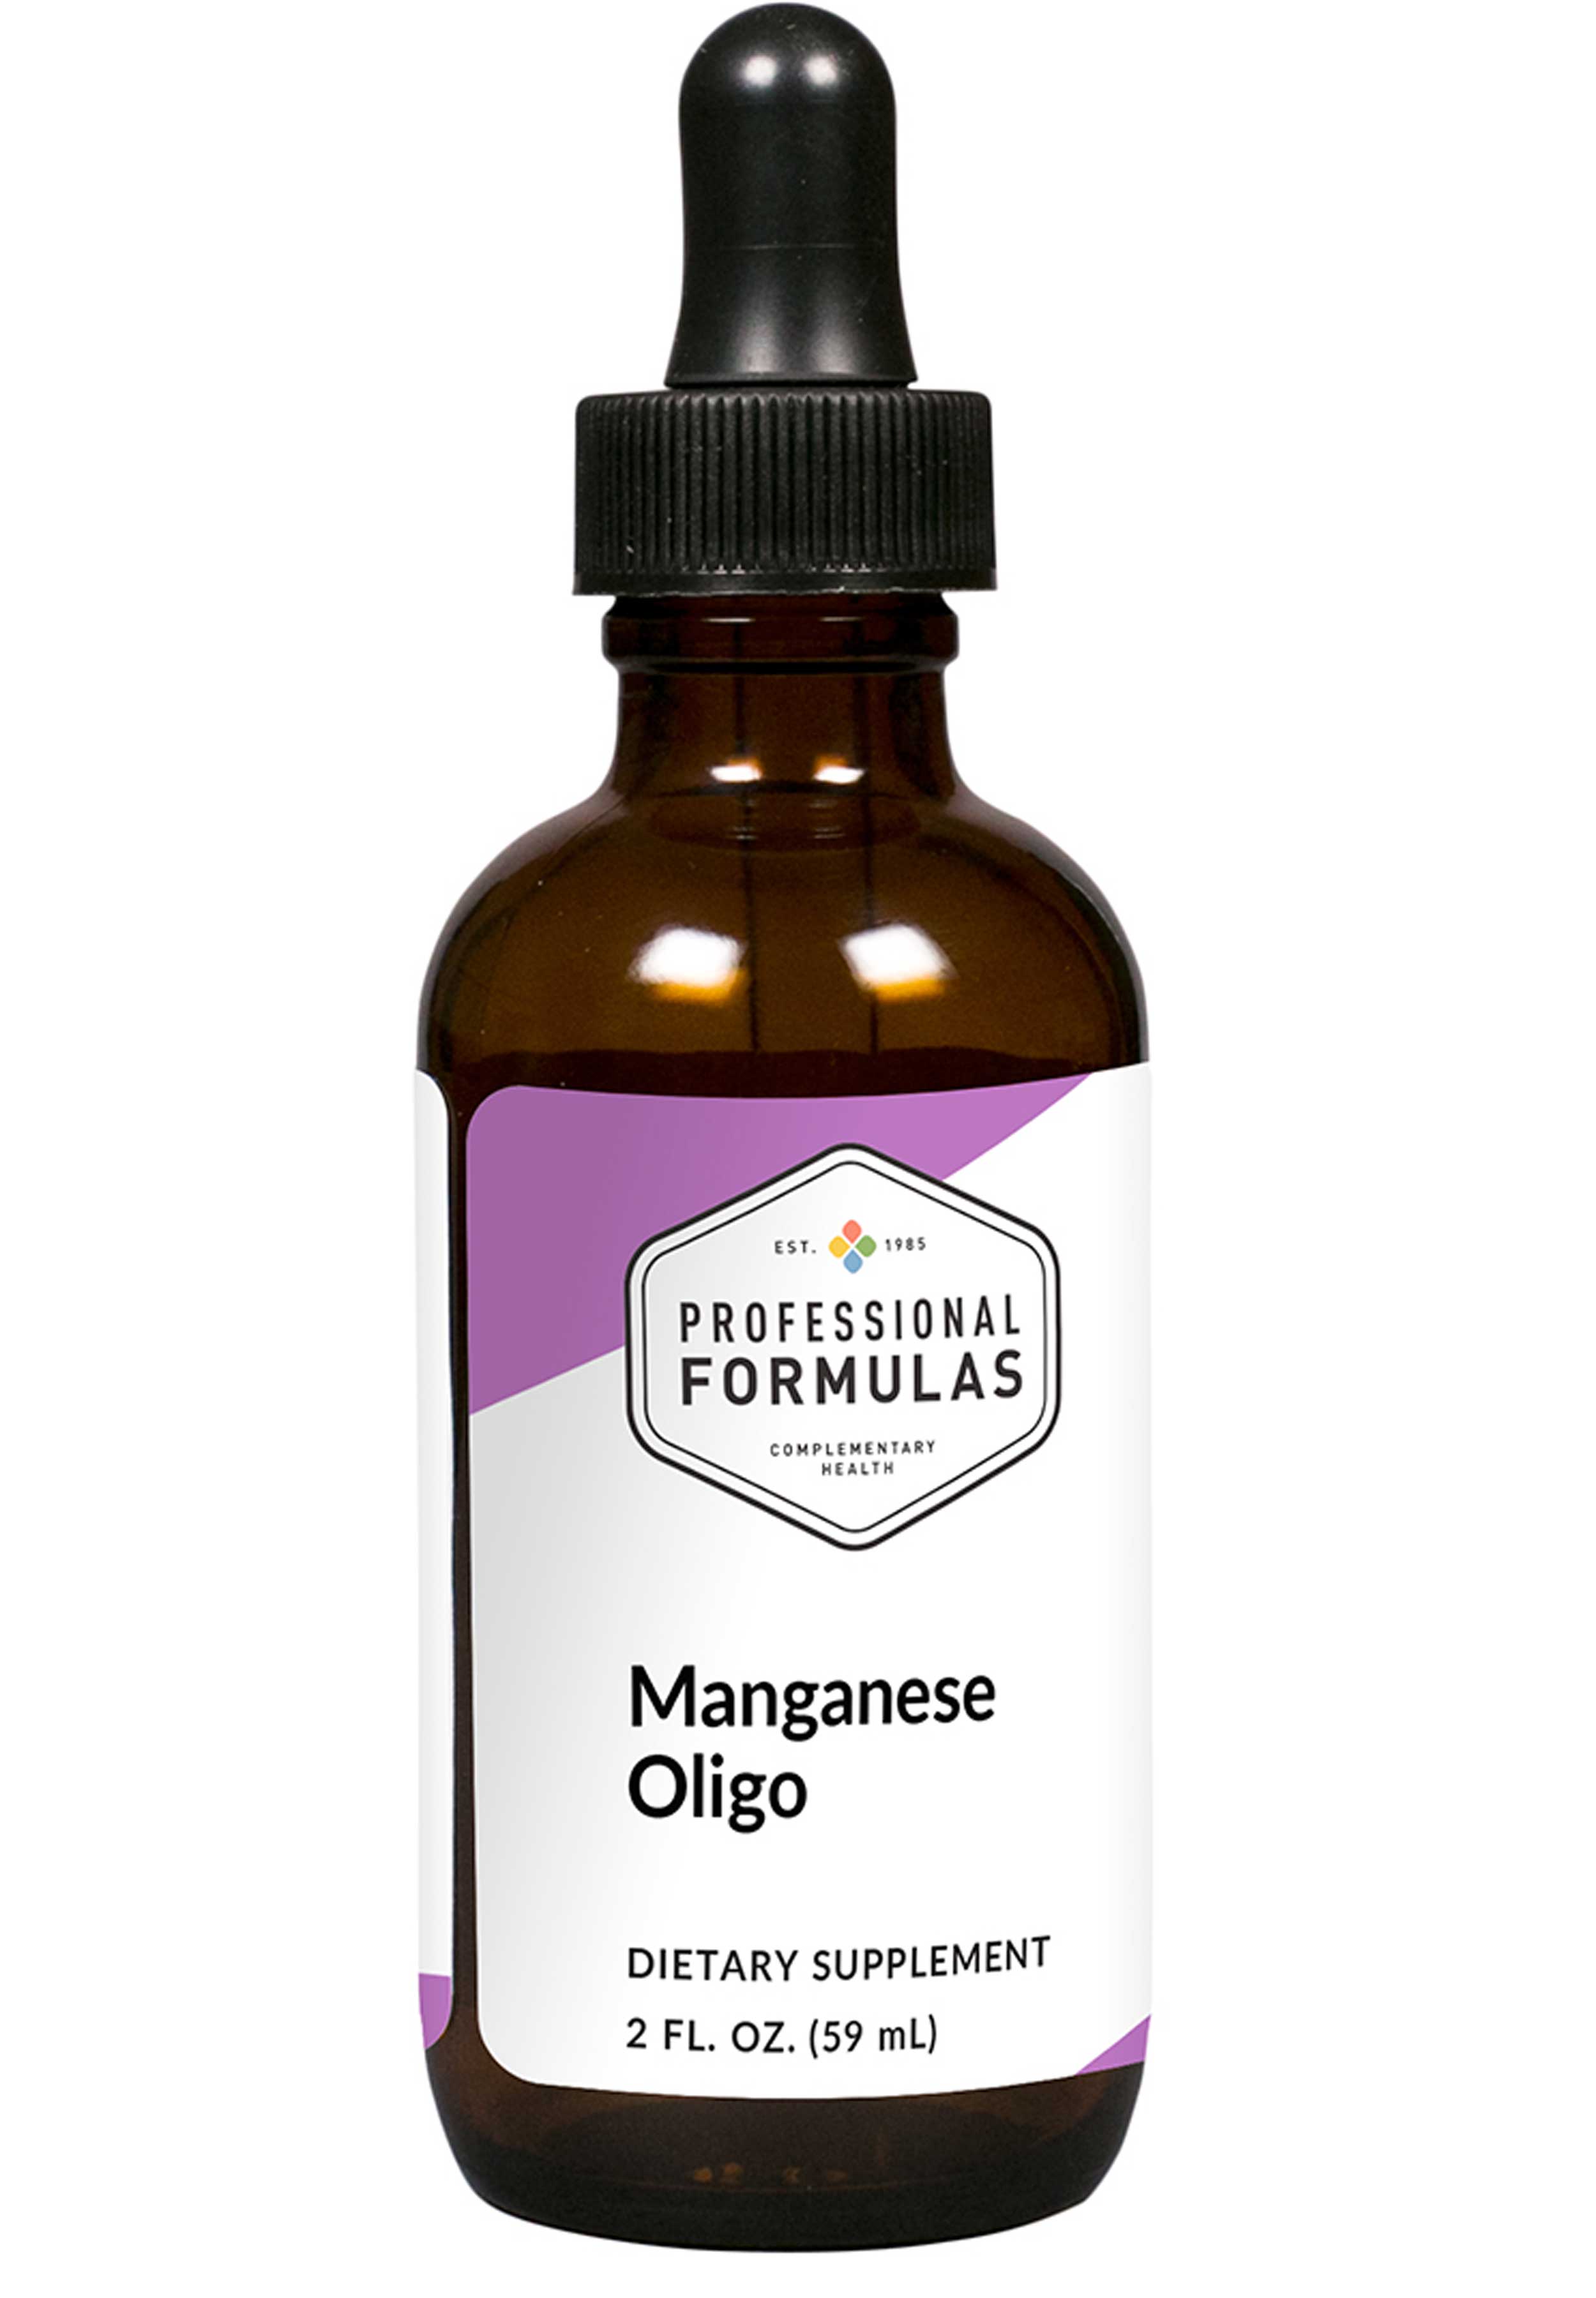 Professional Formulas MN-Manganese (Oligo Element)